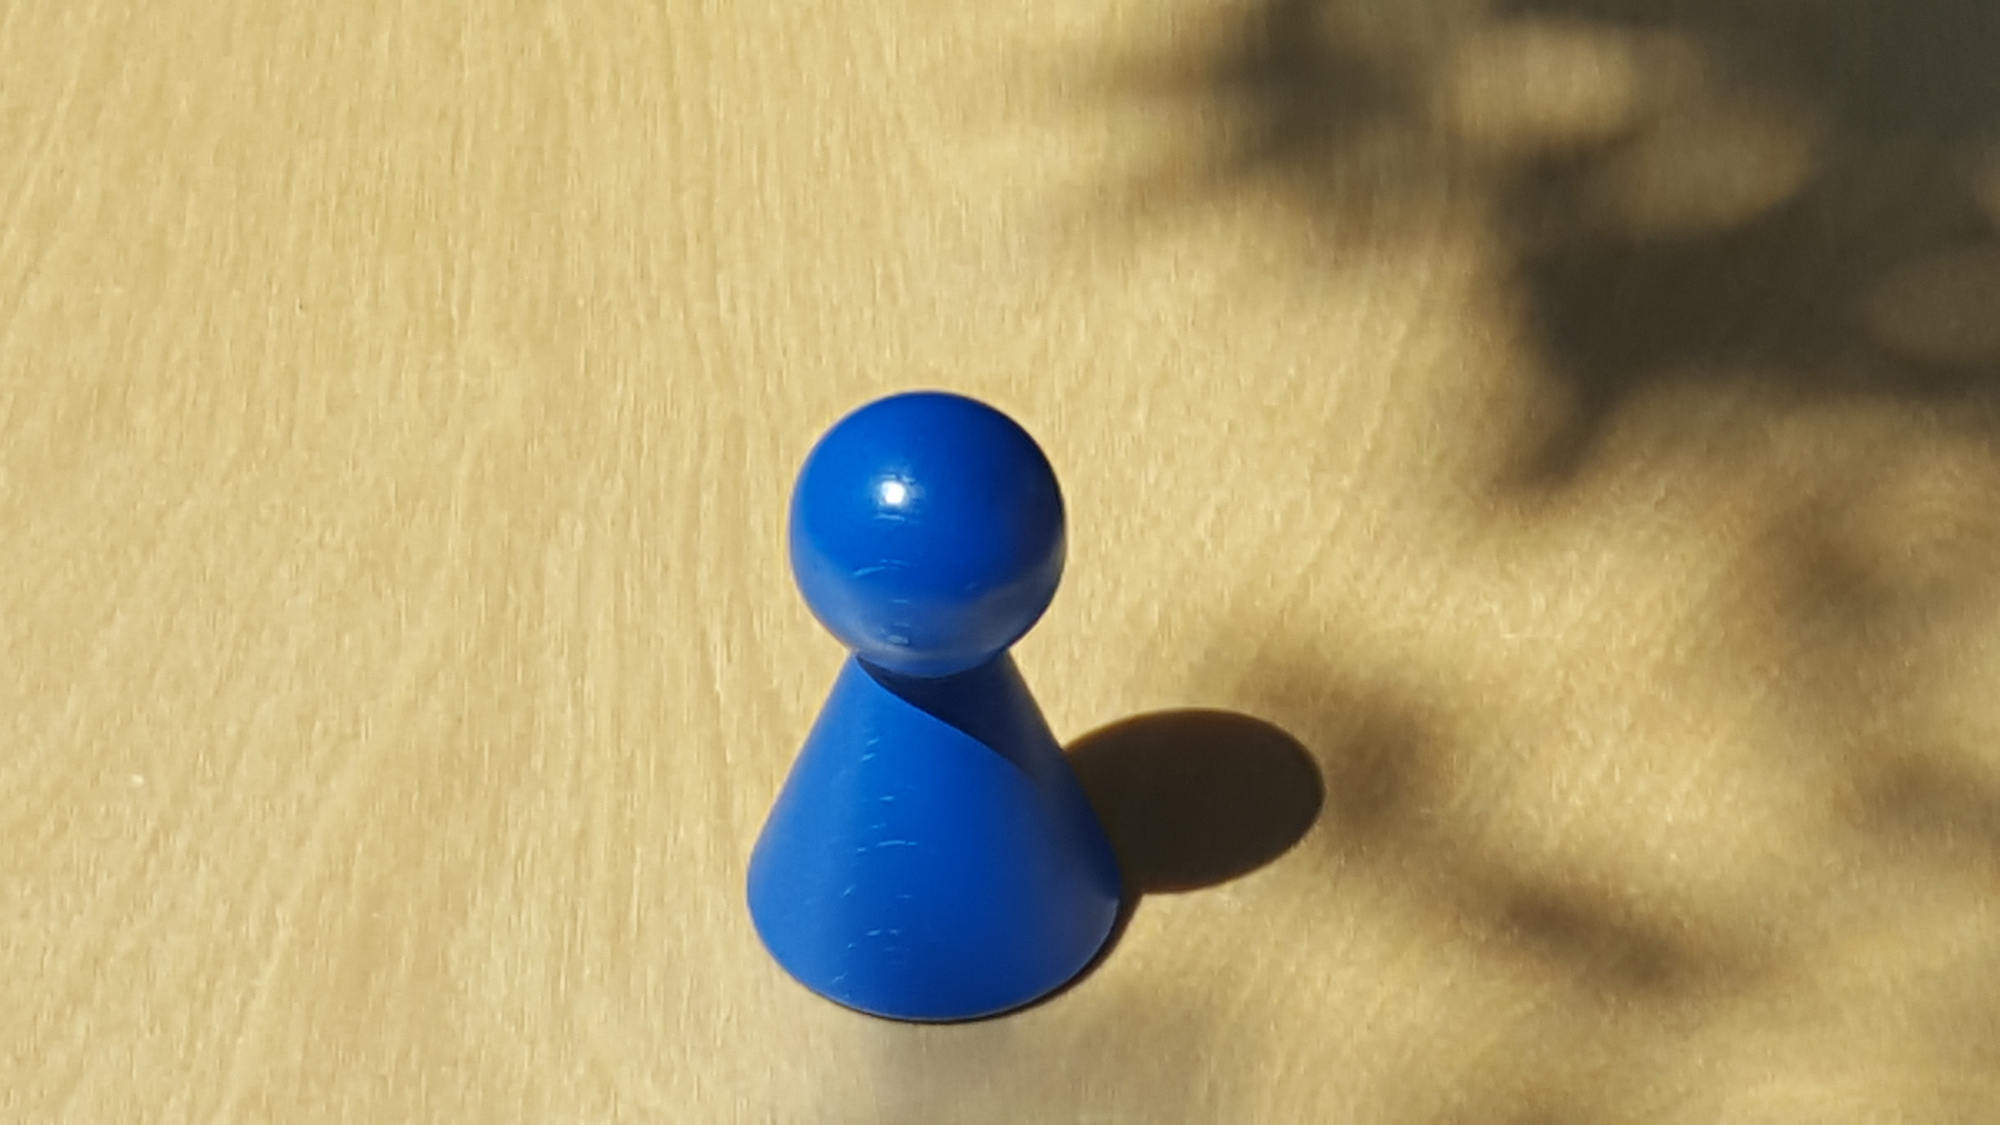 www.systembrett.at · Systembrett-Artikel · Einzel-Figur 7 cm in blau (ohne Augen);